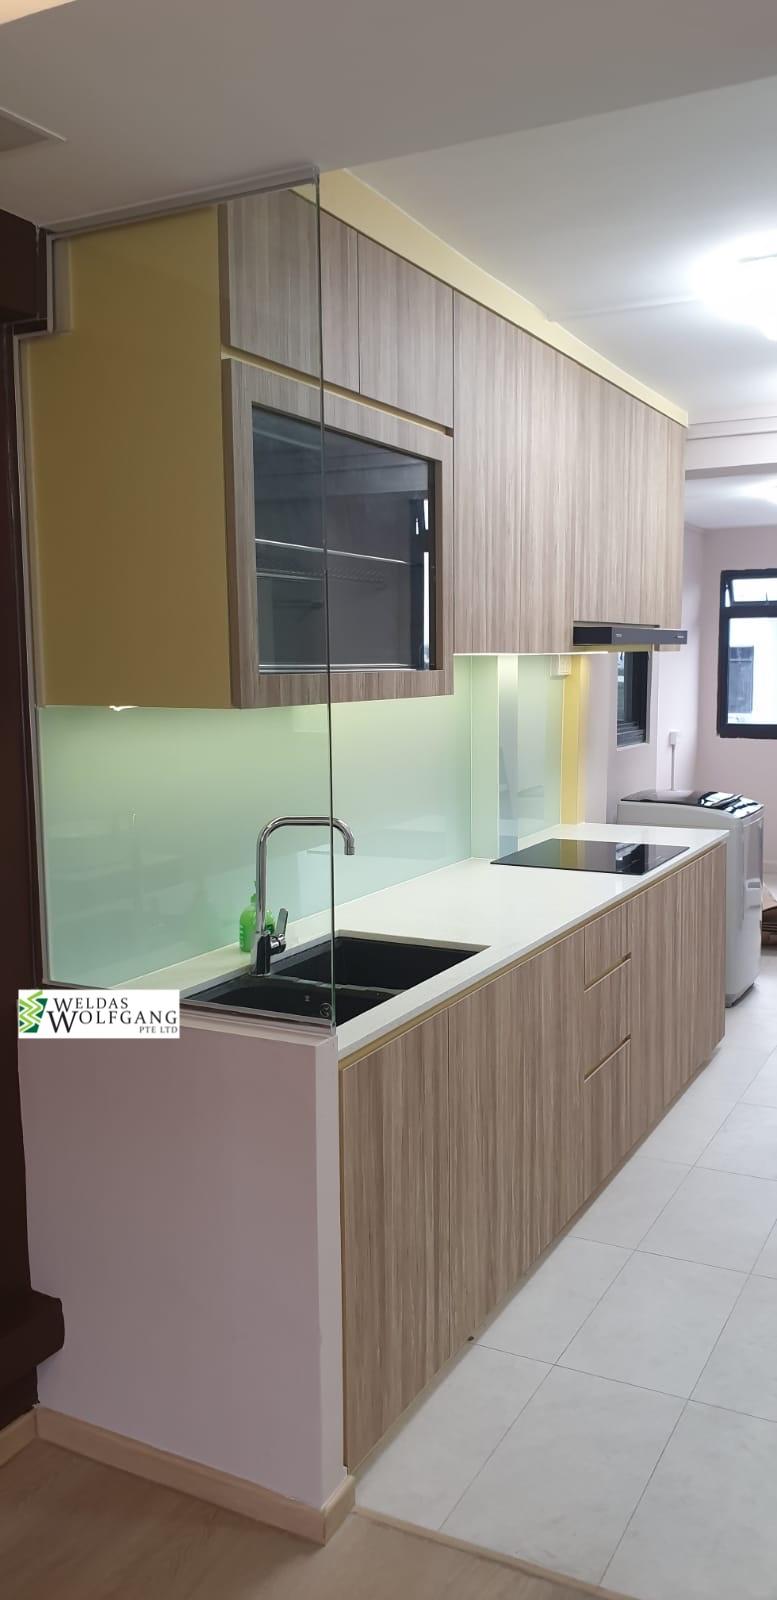 Minimalist, Modern Design - Kitchen - HDB 3 Room - Design by Weldas Wolfgang Pte Ltd